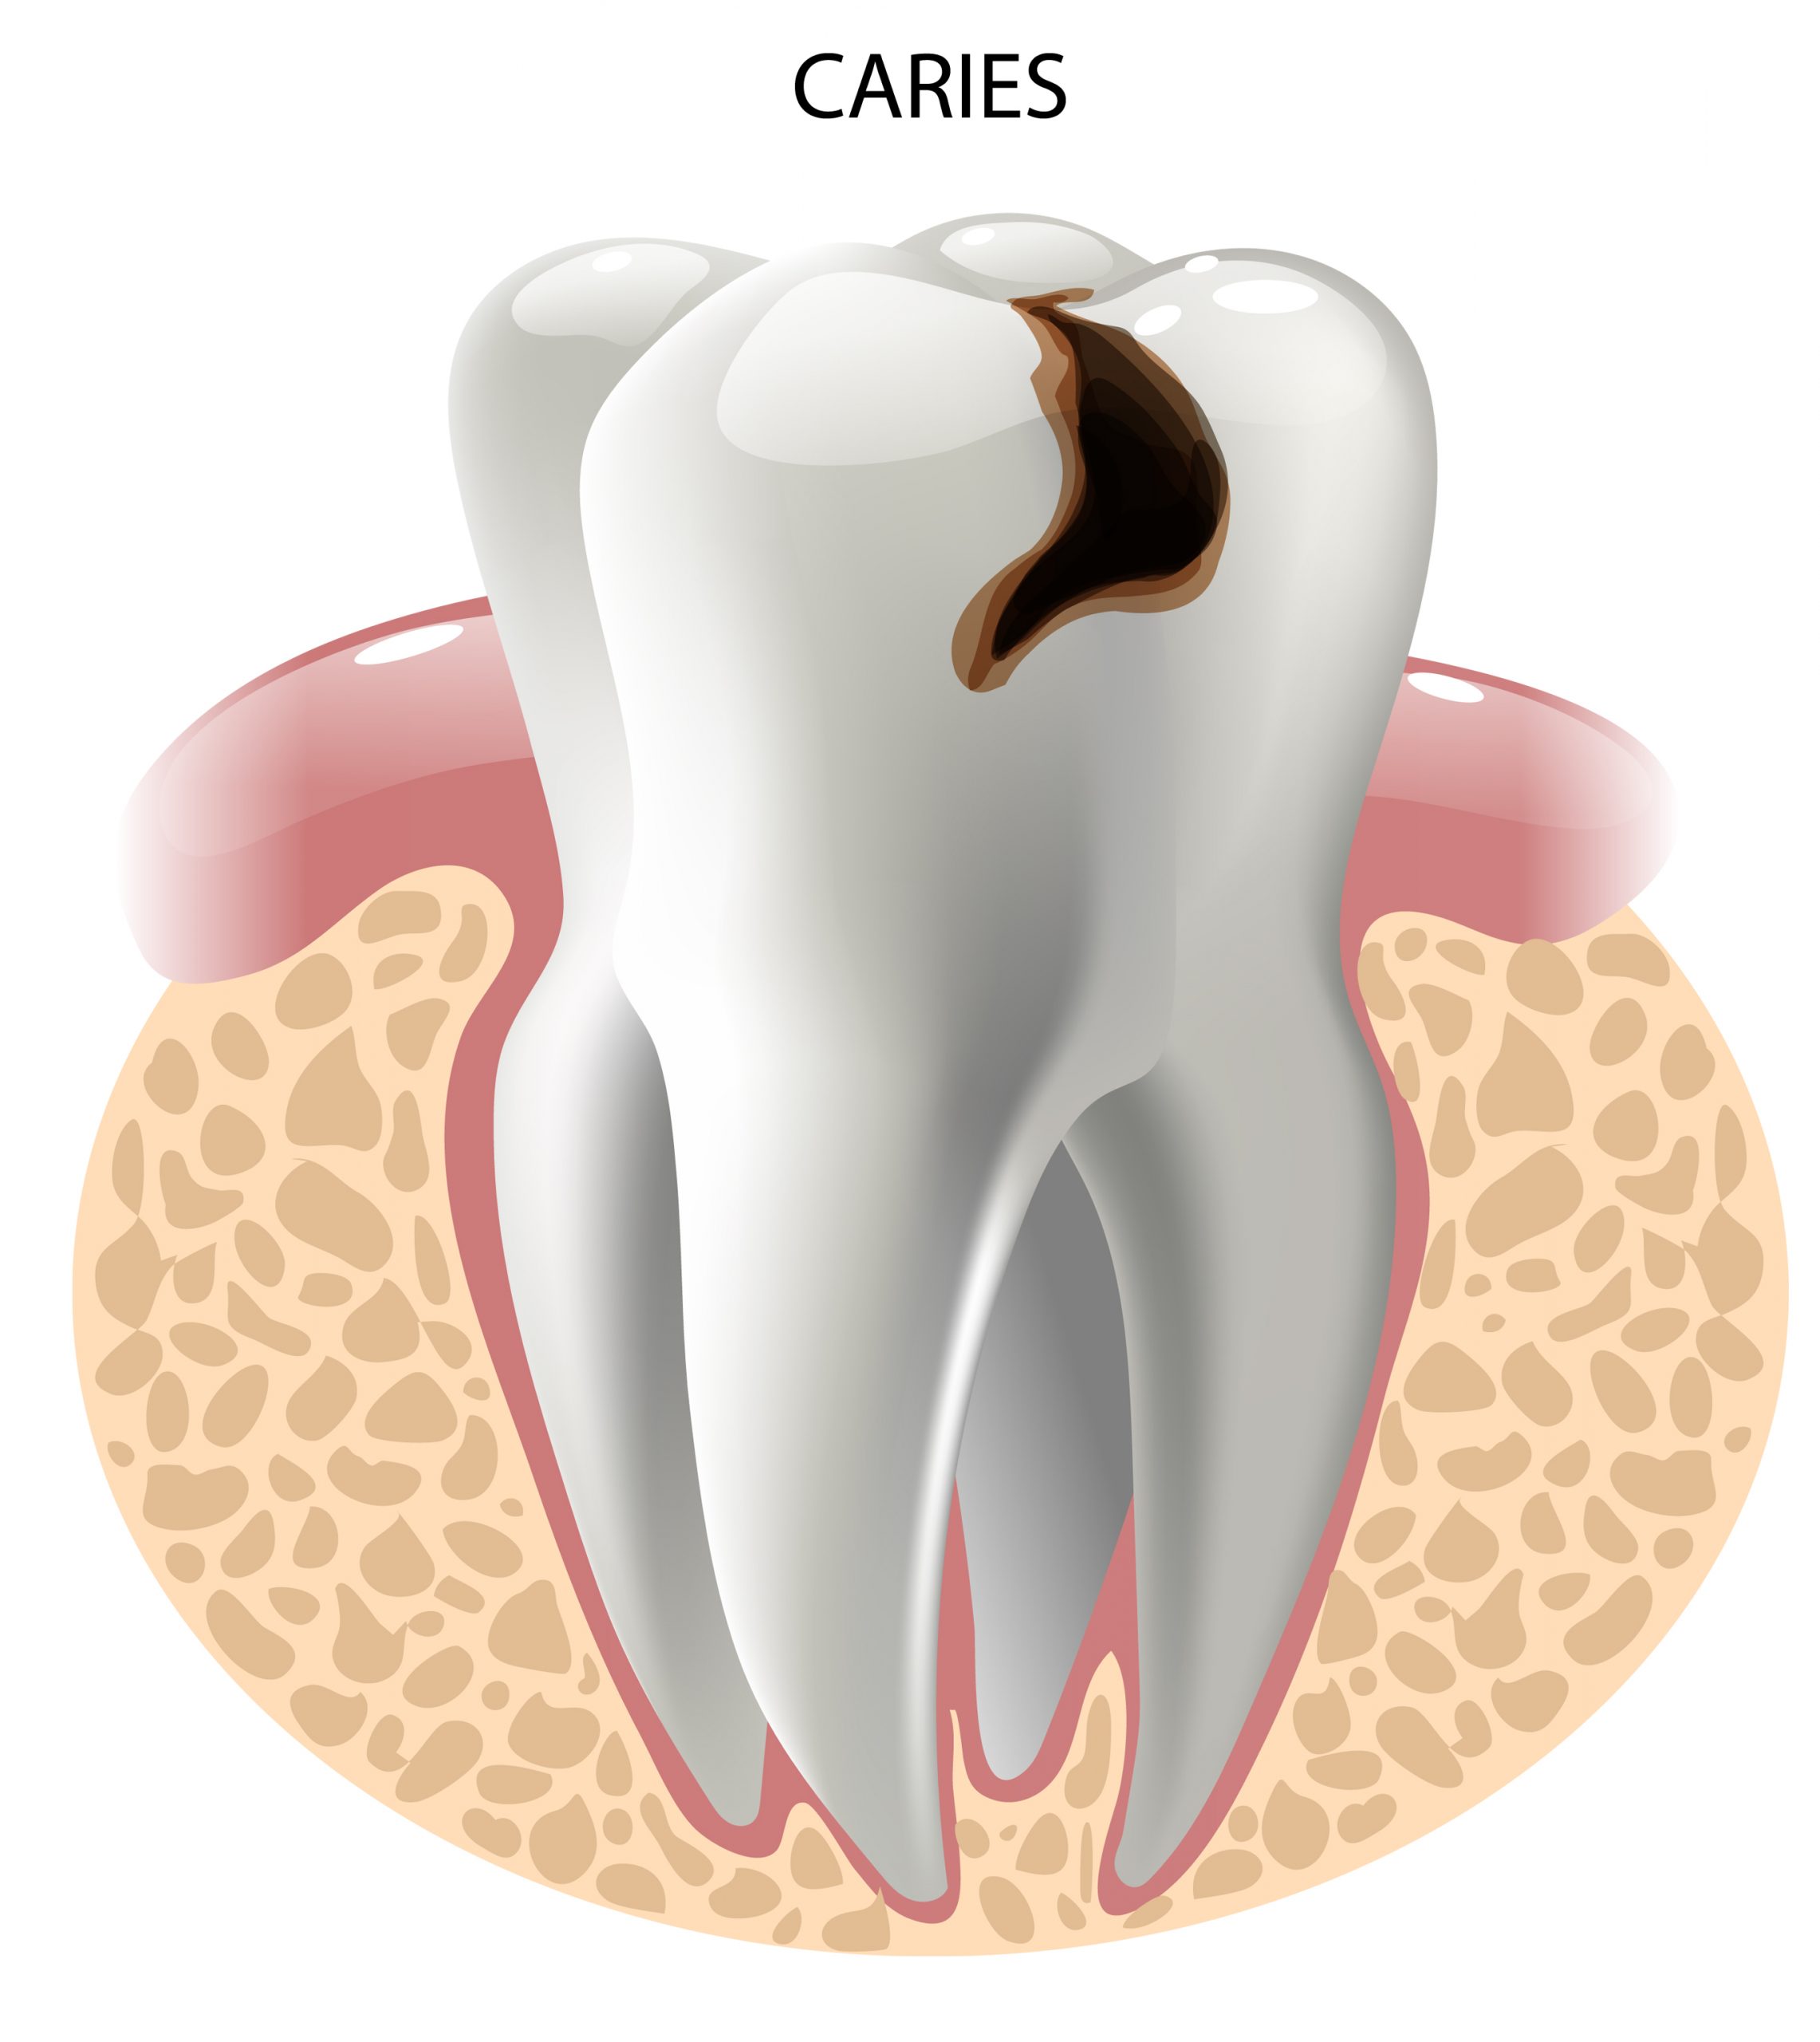 Qué son las caries dentales, causas y tratamientos